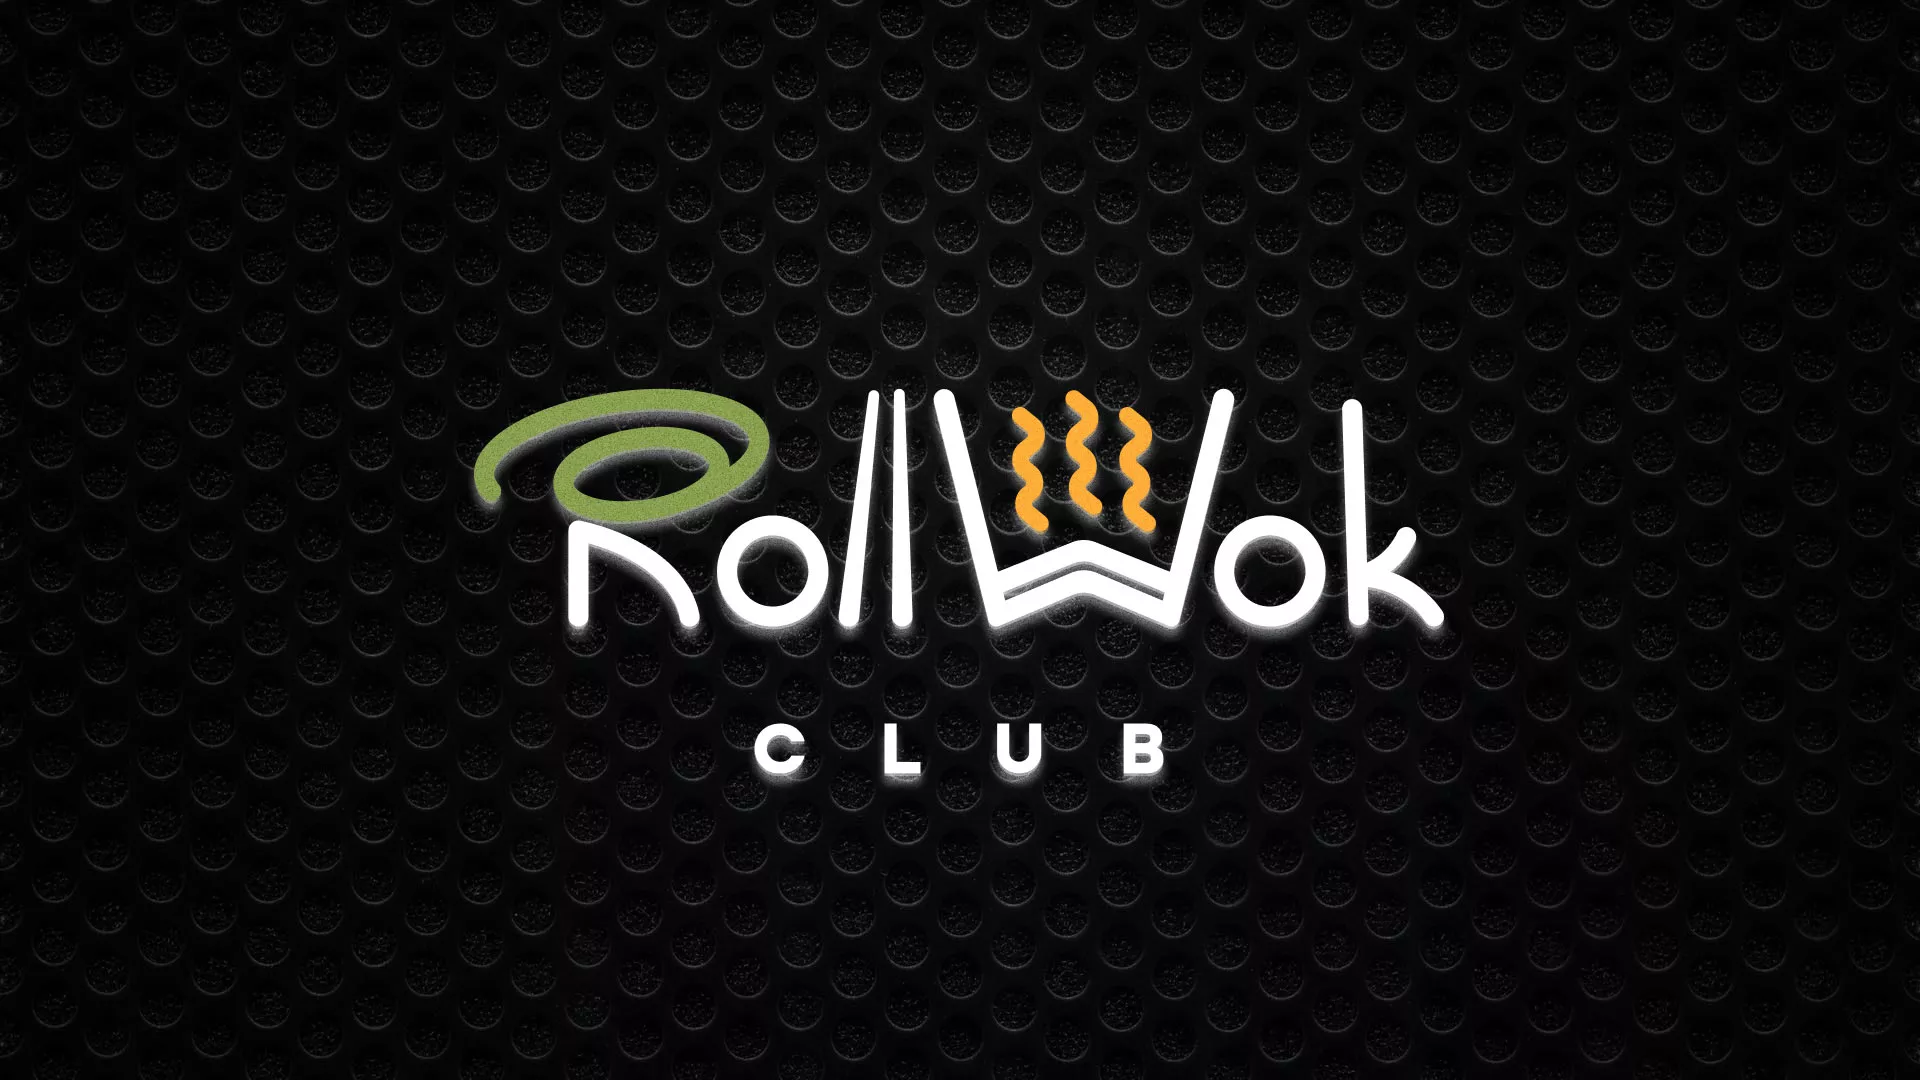 Брендирование торговых точек суши-бара «Roll Wok Club» в Поворино